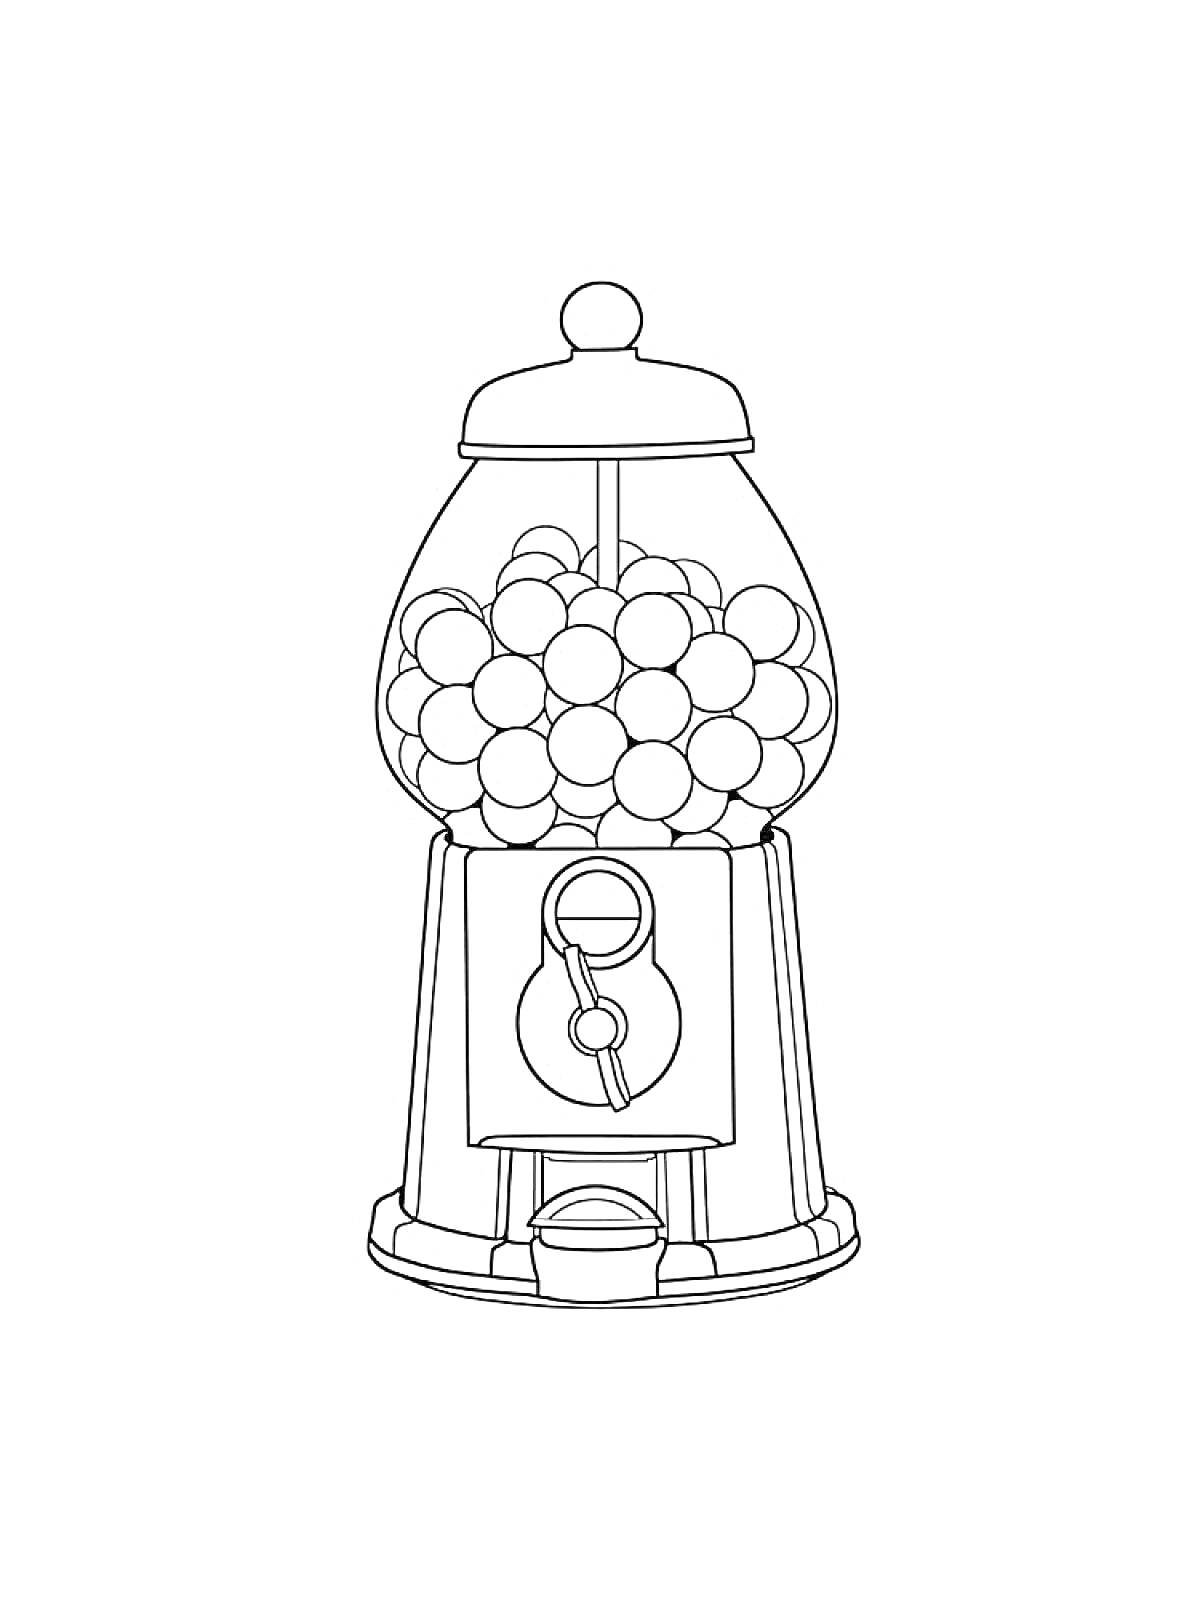 Автомат с жевательной резинкой, наполненный шарами-жевательной резинкой, с монетоприемником и ручкой для выдачи жвачки